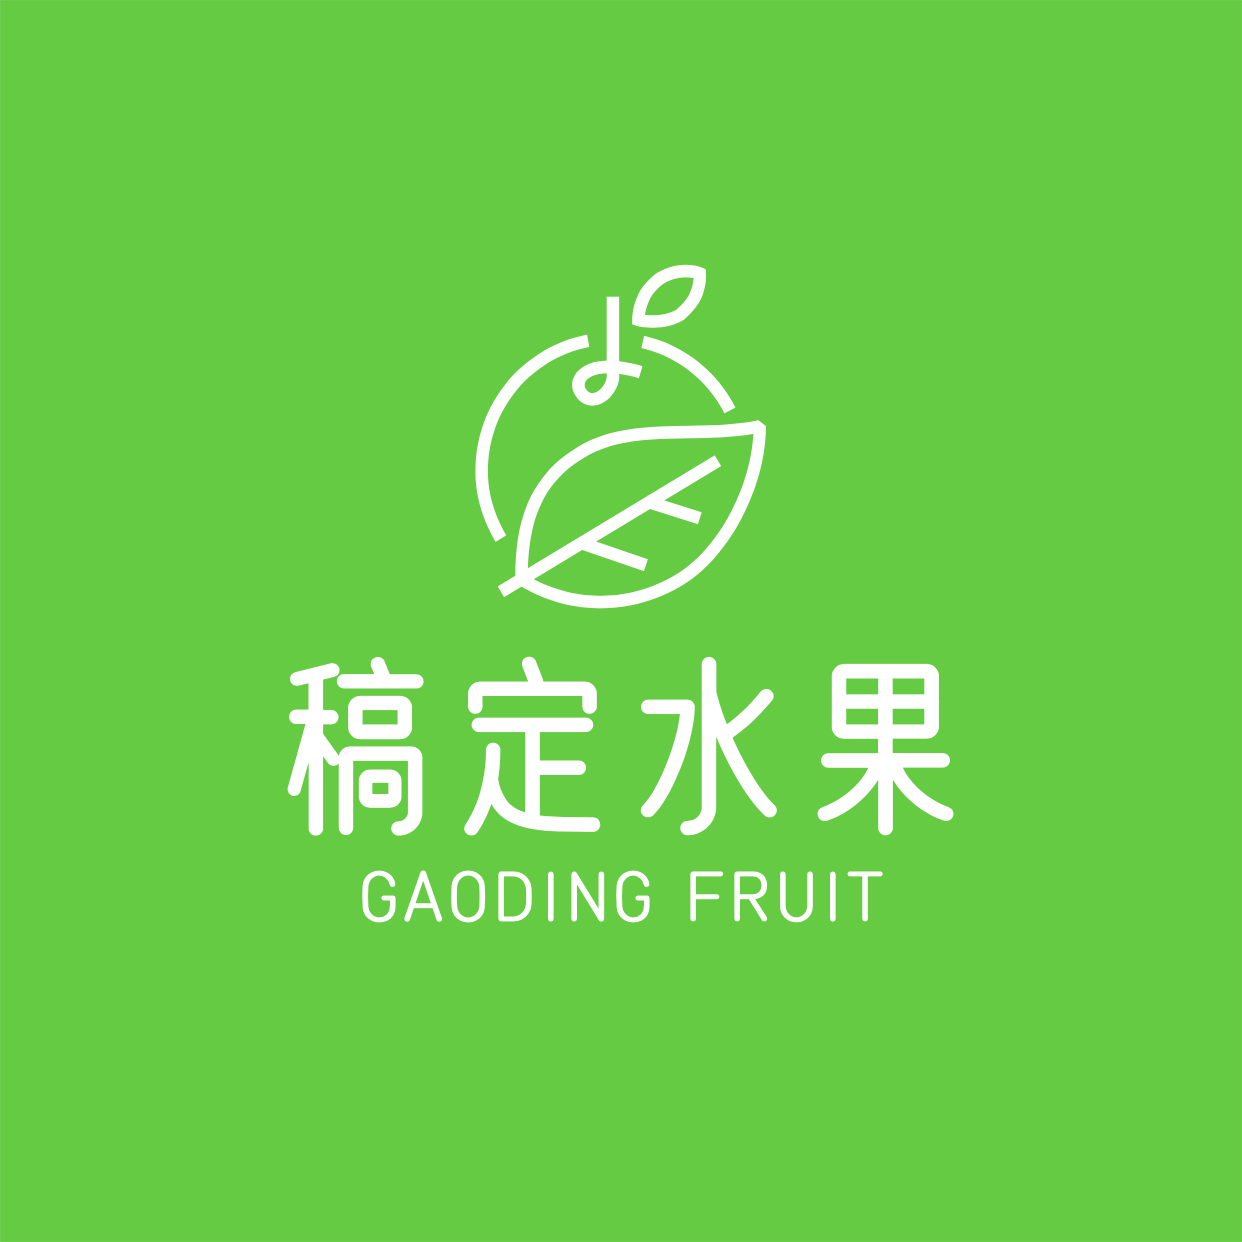 水果店标简约创意头像logo